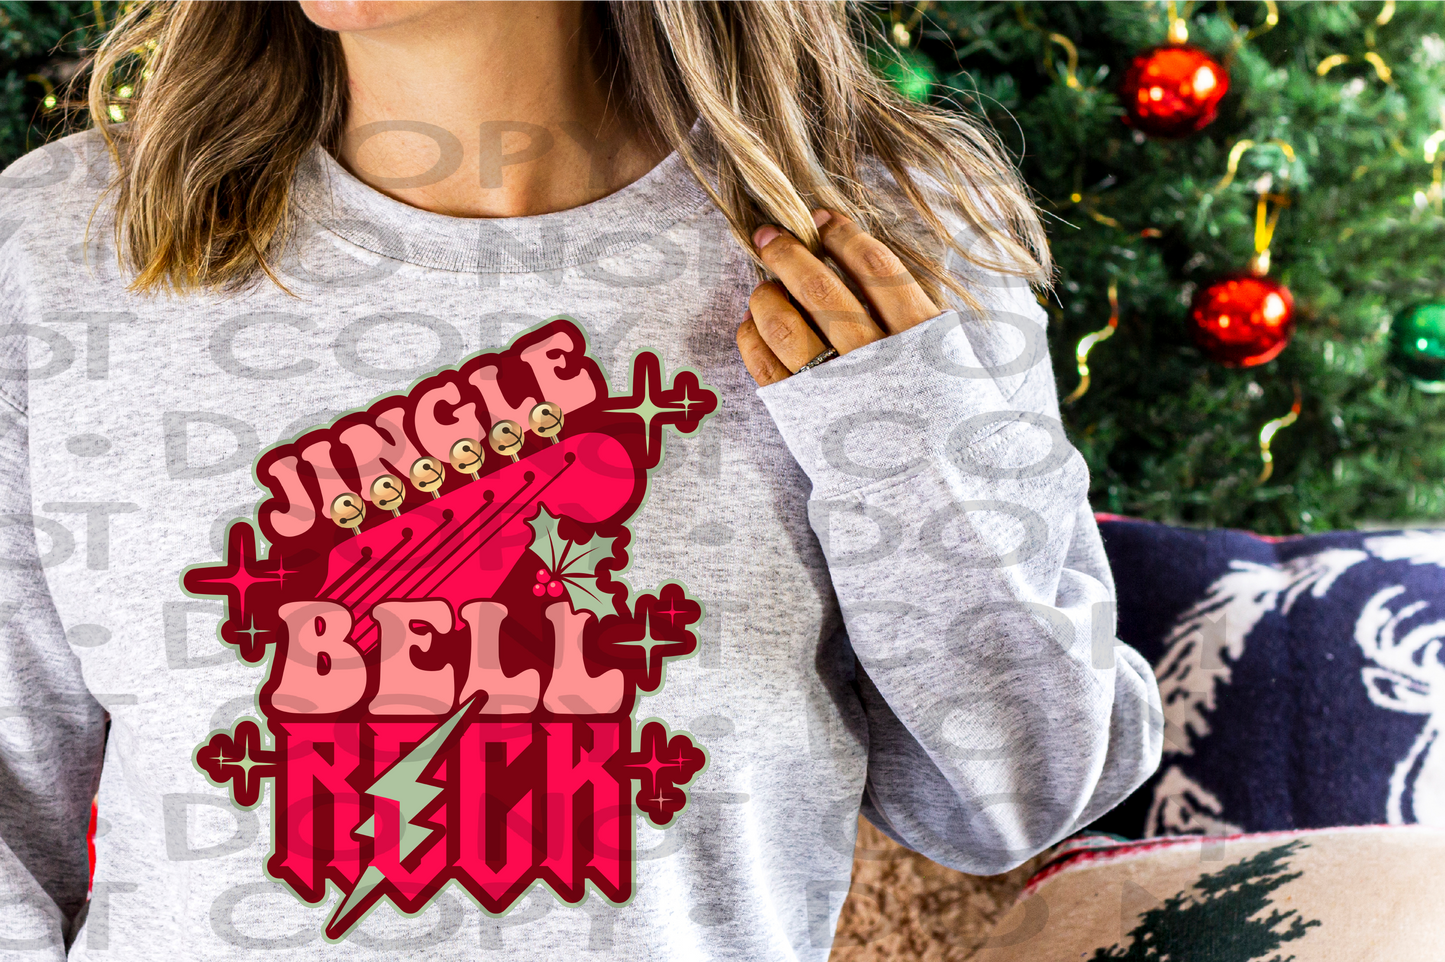 Jingle bell rock - DTF